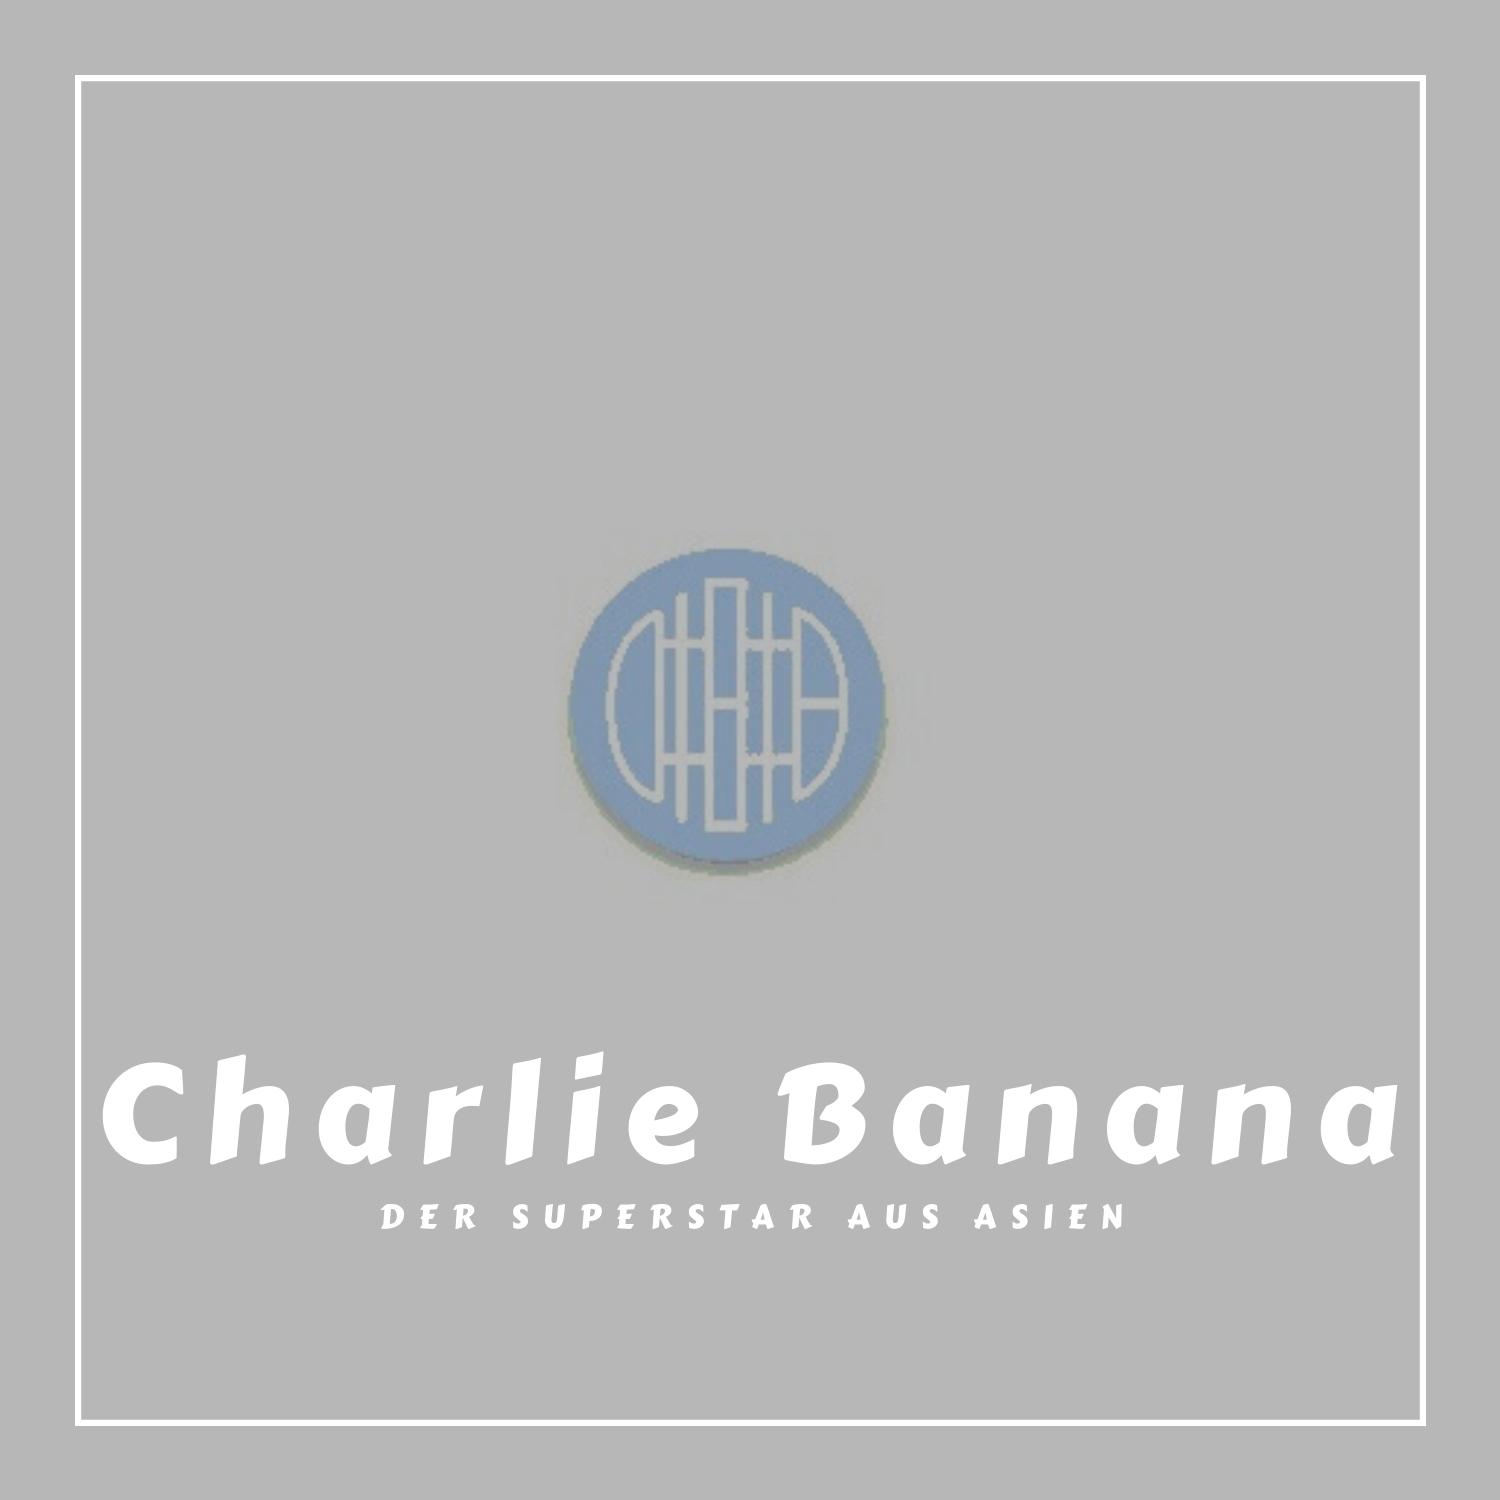 Charlie Banana Stoffwindeln und Zubehör